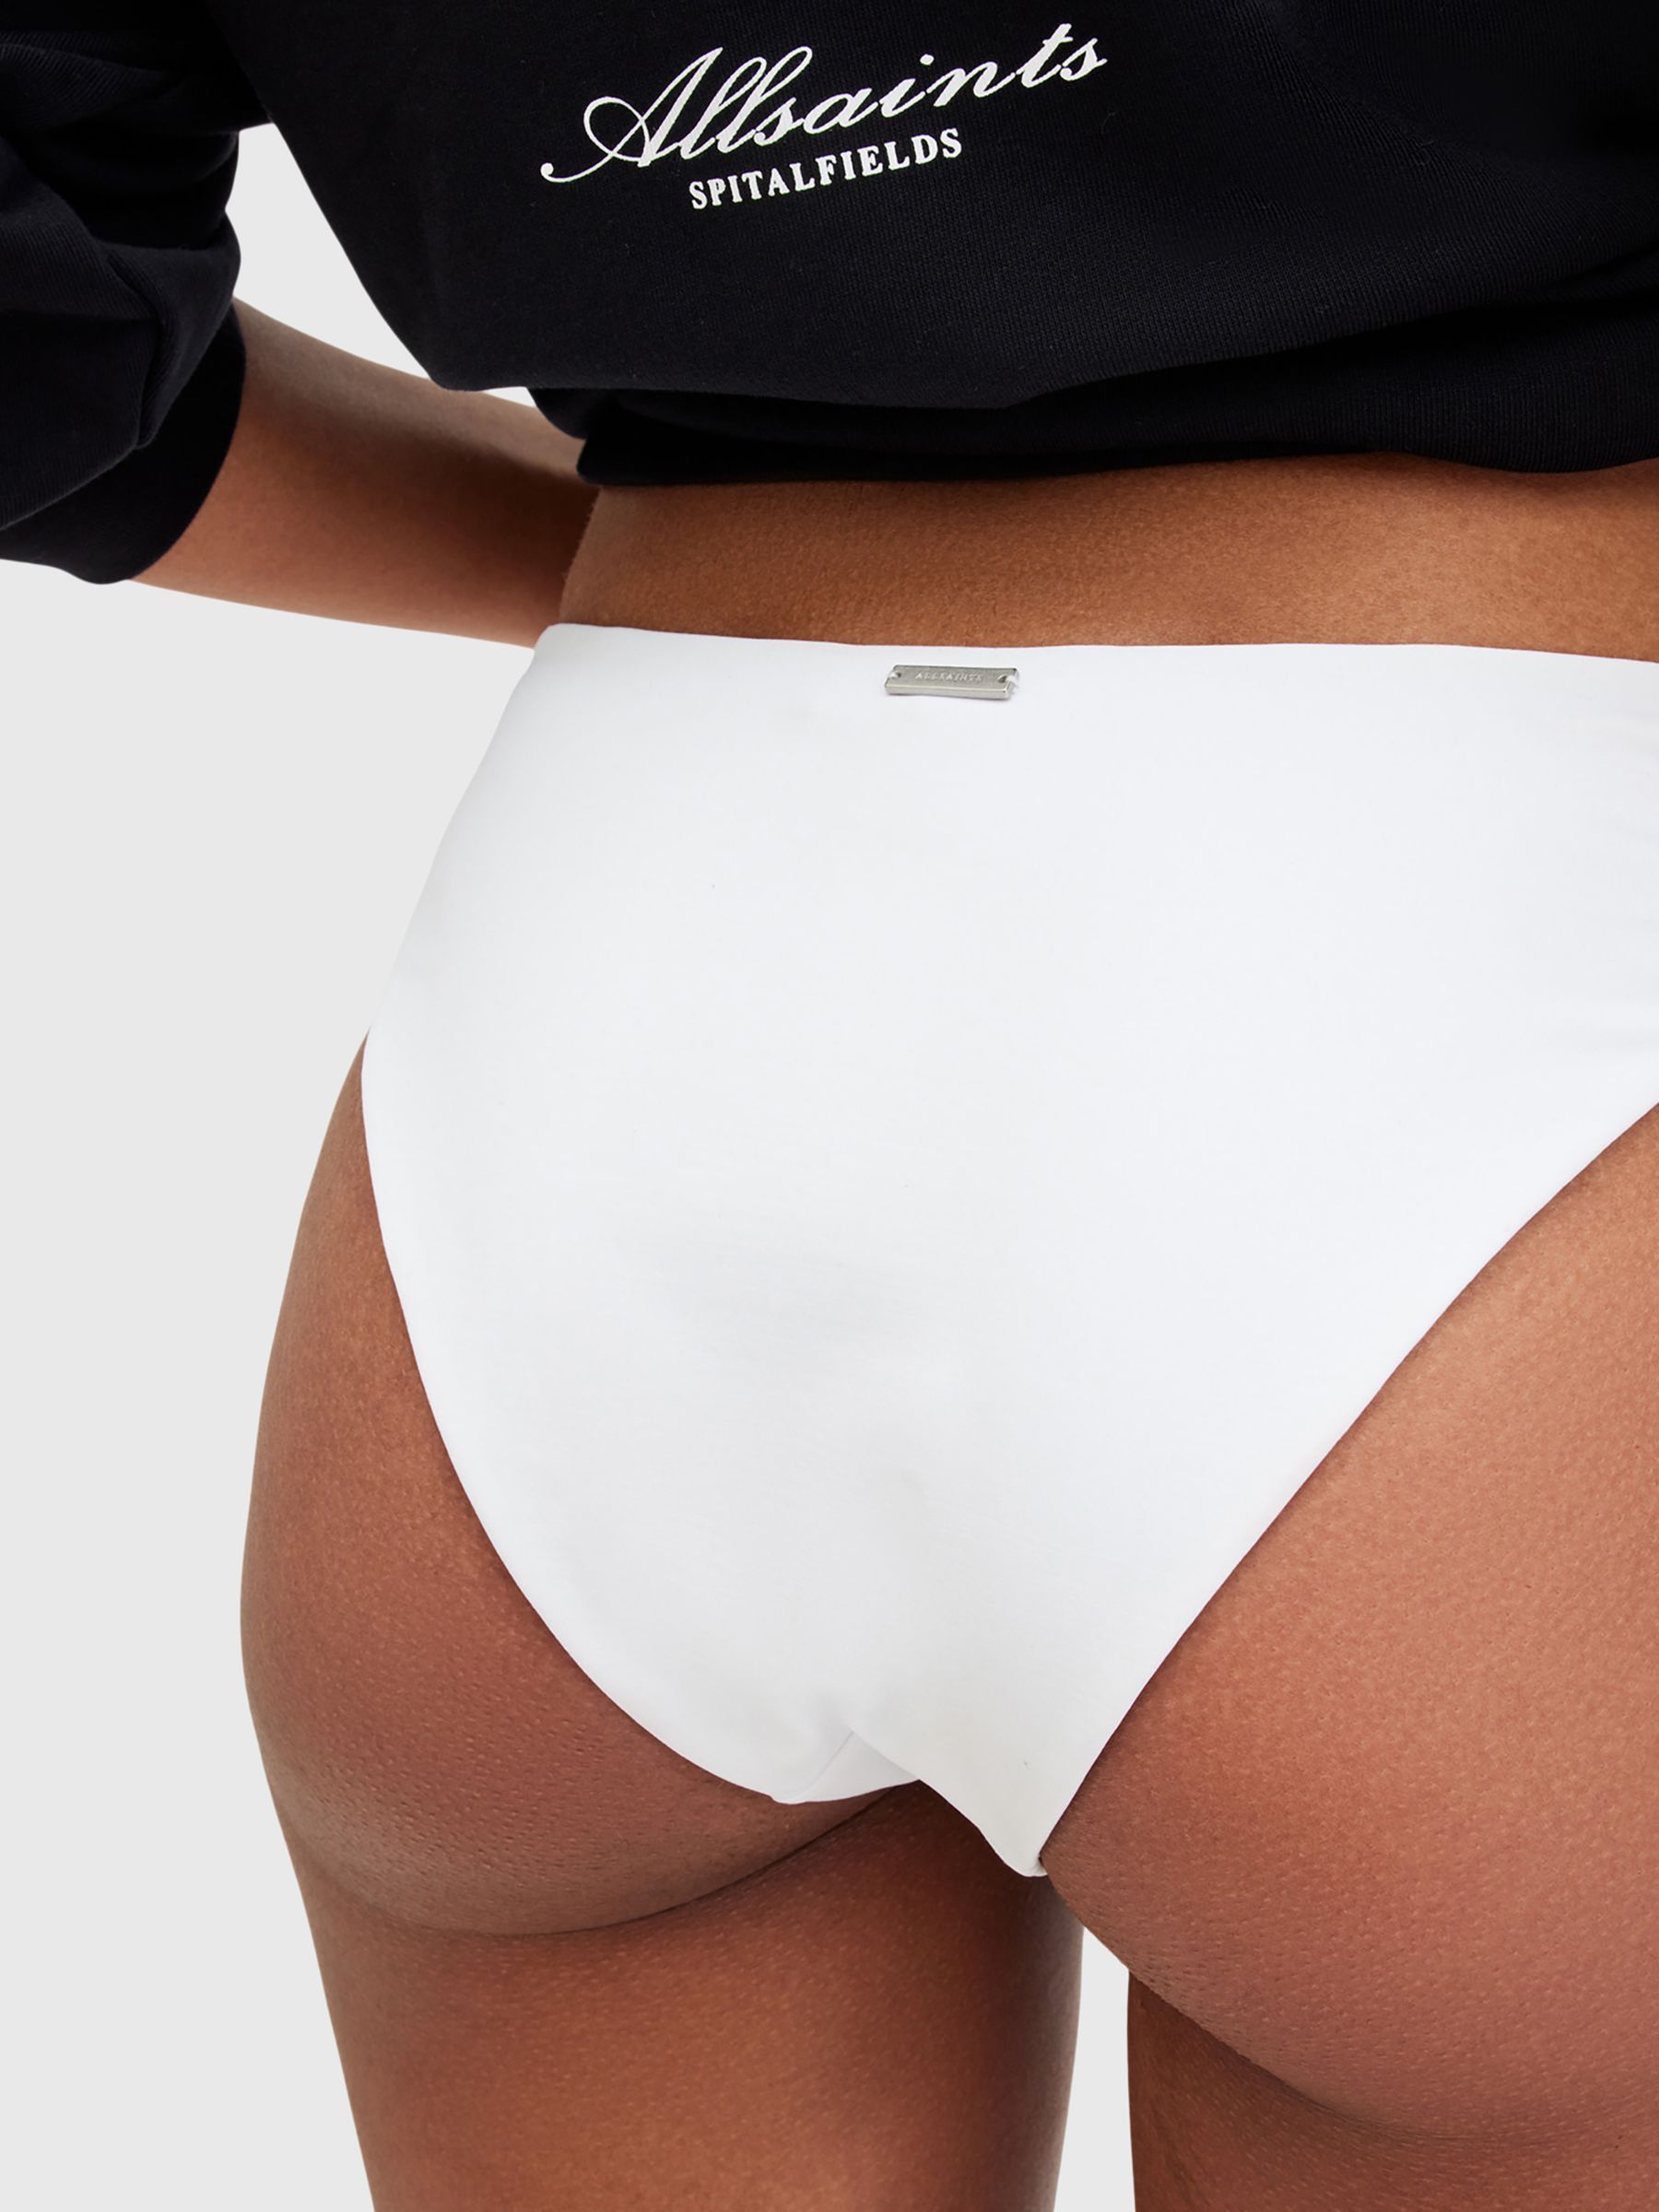 AllSaints Kayla Bikini Bottoms, White, L